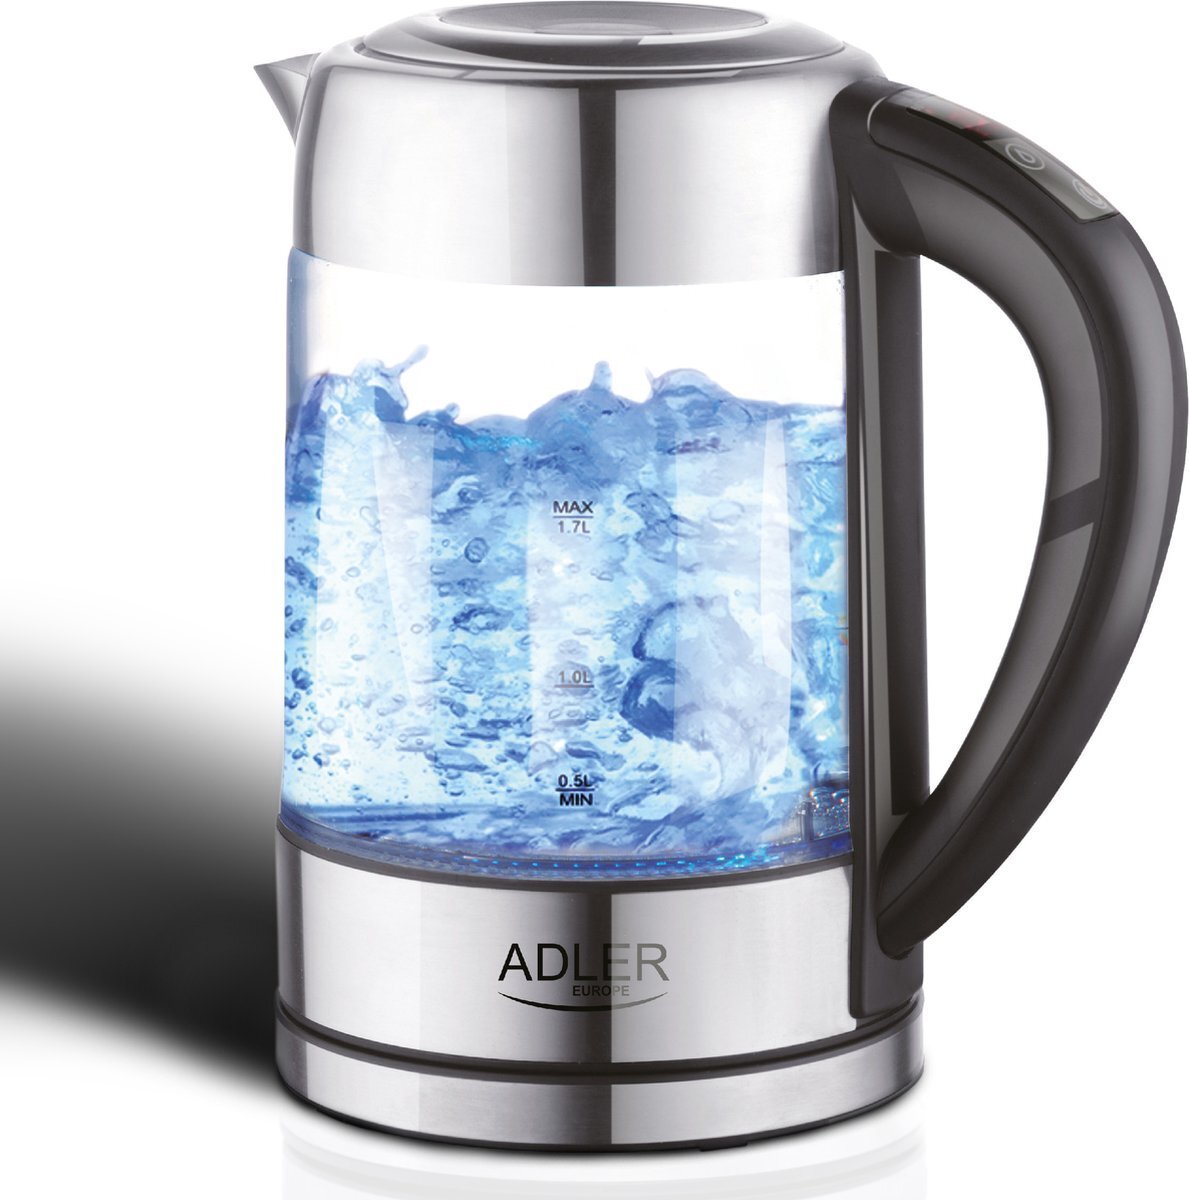 Adler Waterkoker - Met temperatuurregeling - 1,7 liter - Glas - Waterkokers